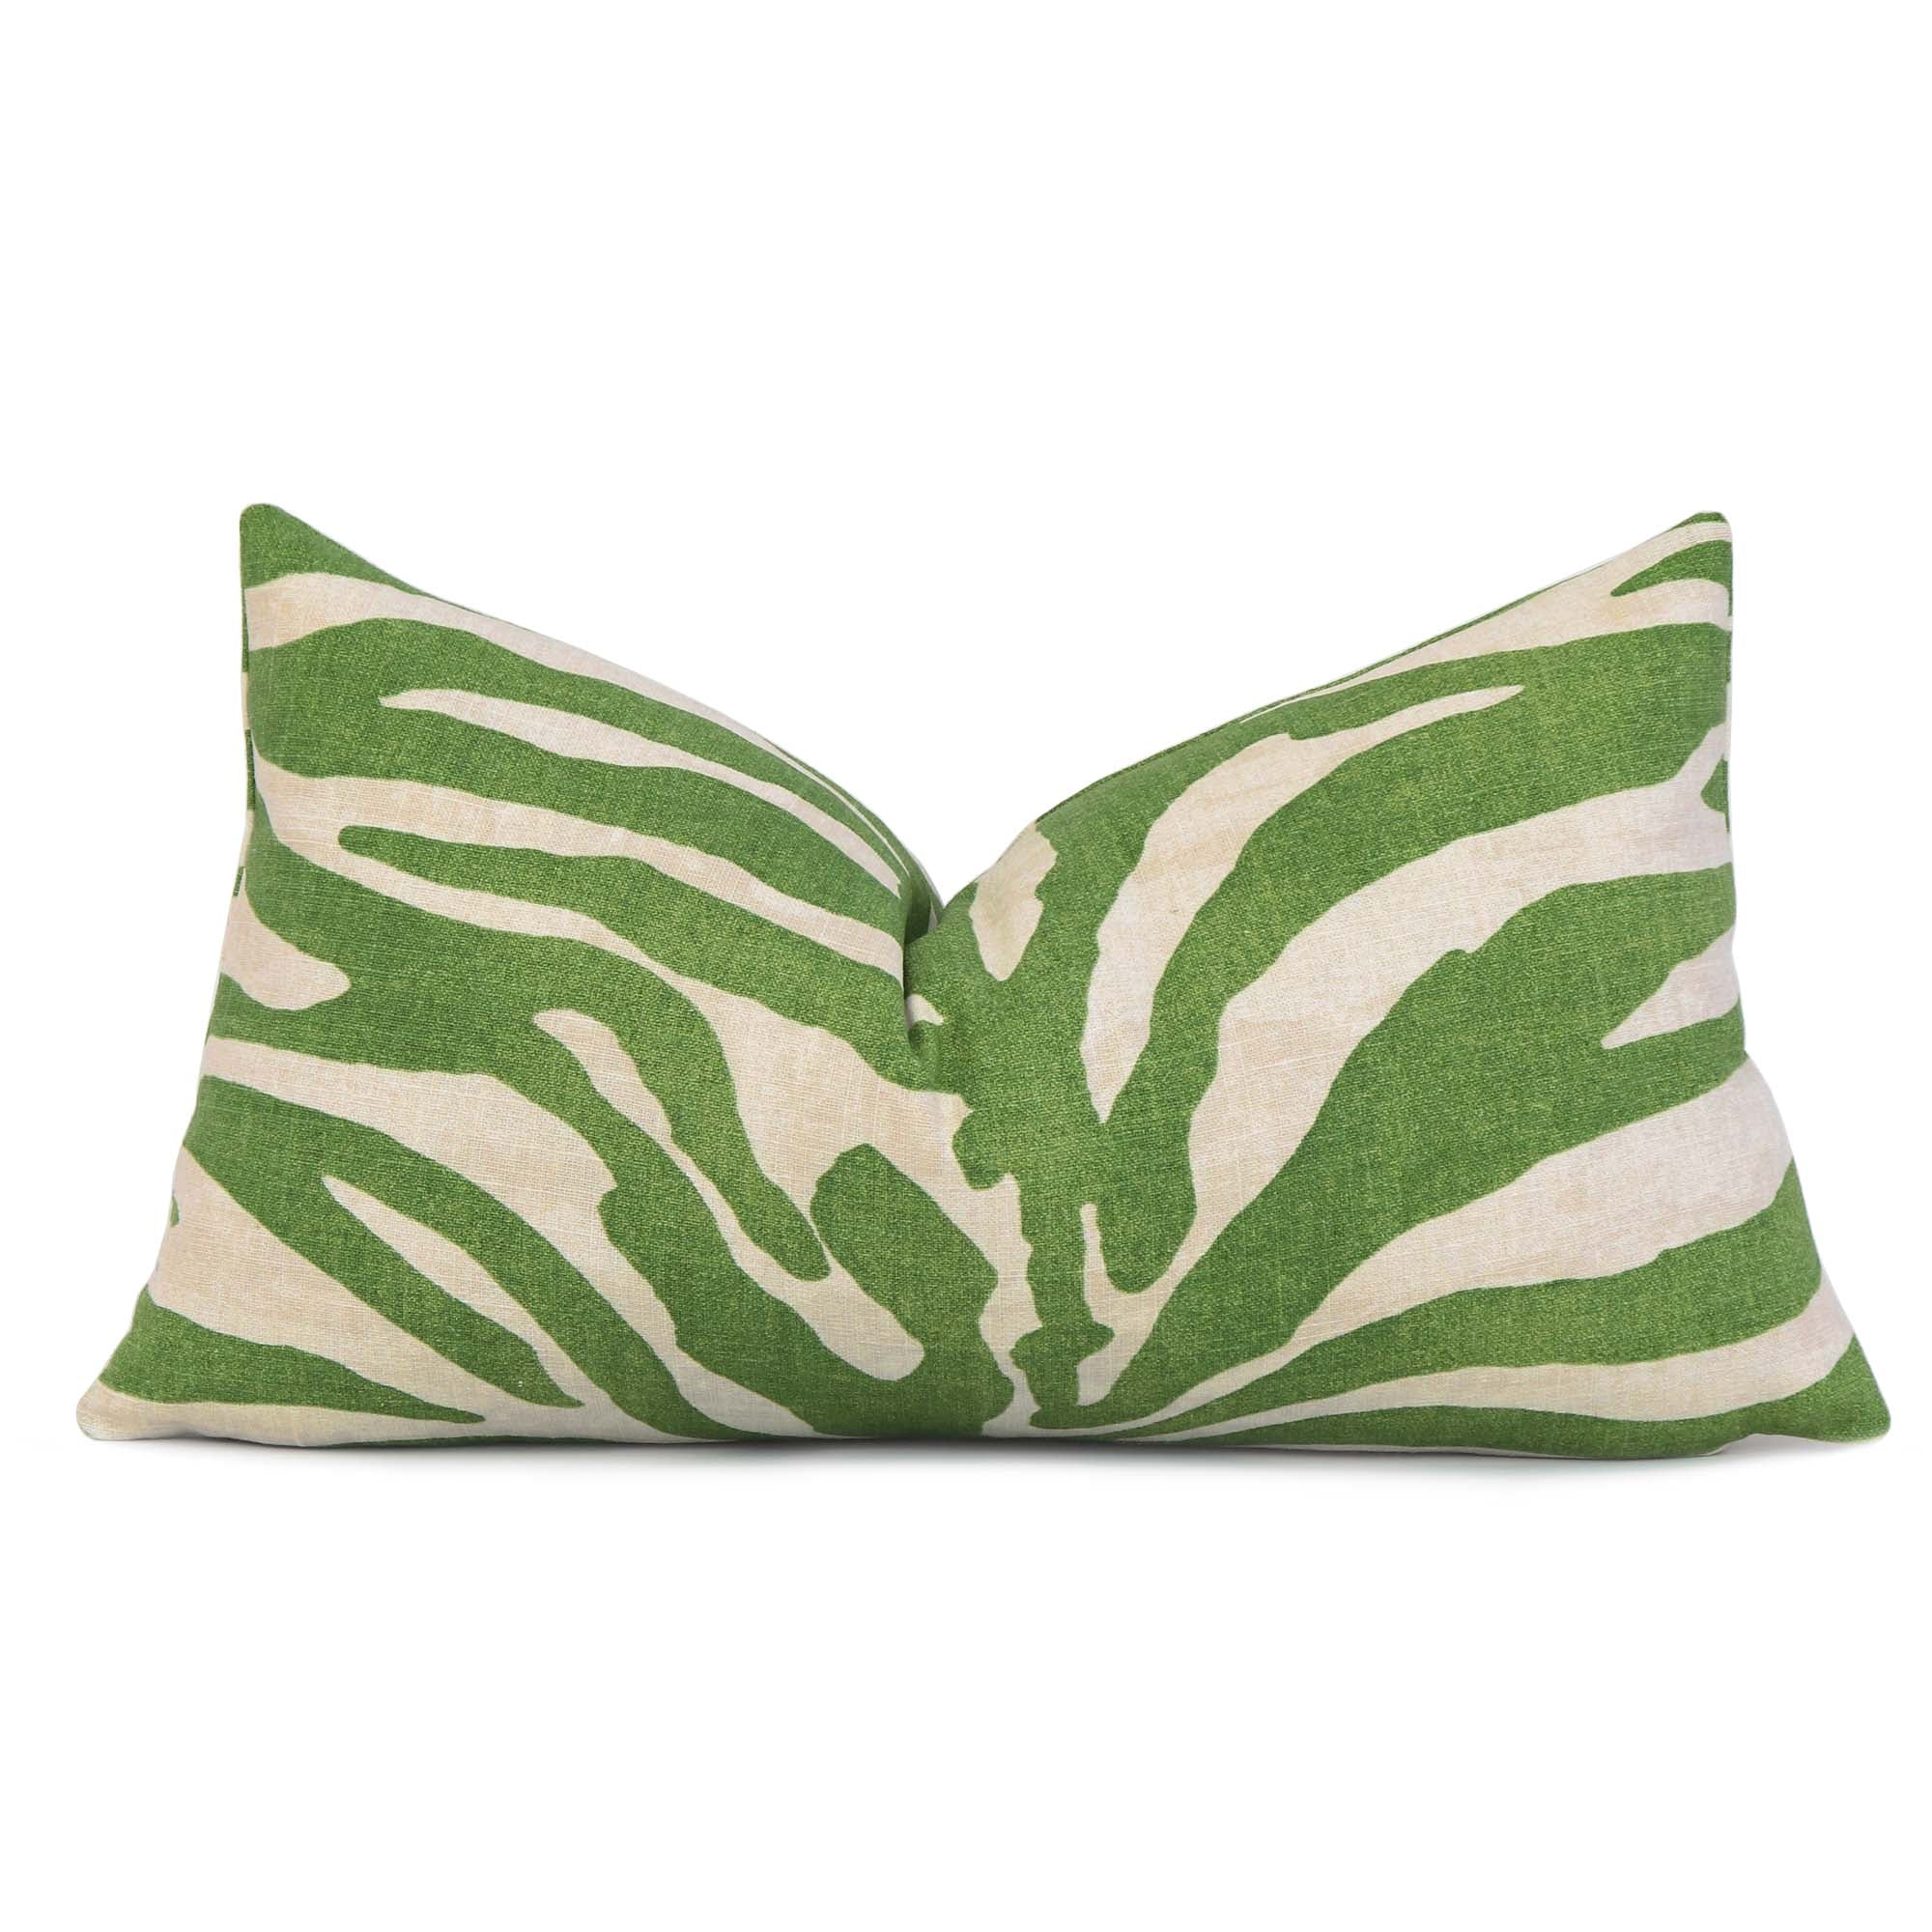 Thibaut Serengeti Zebra Designer Luxury Green Lumbar Throw Pillow Cover